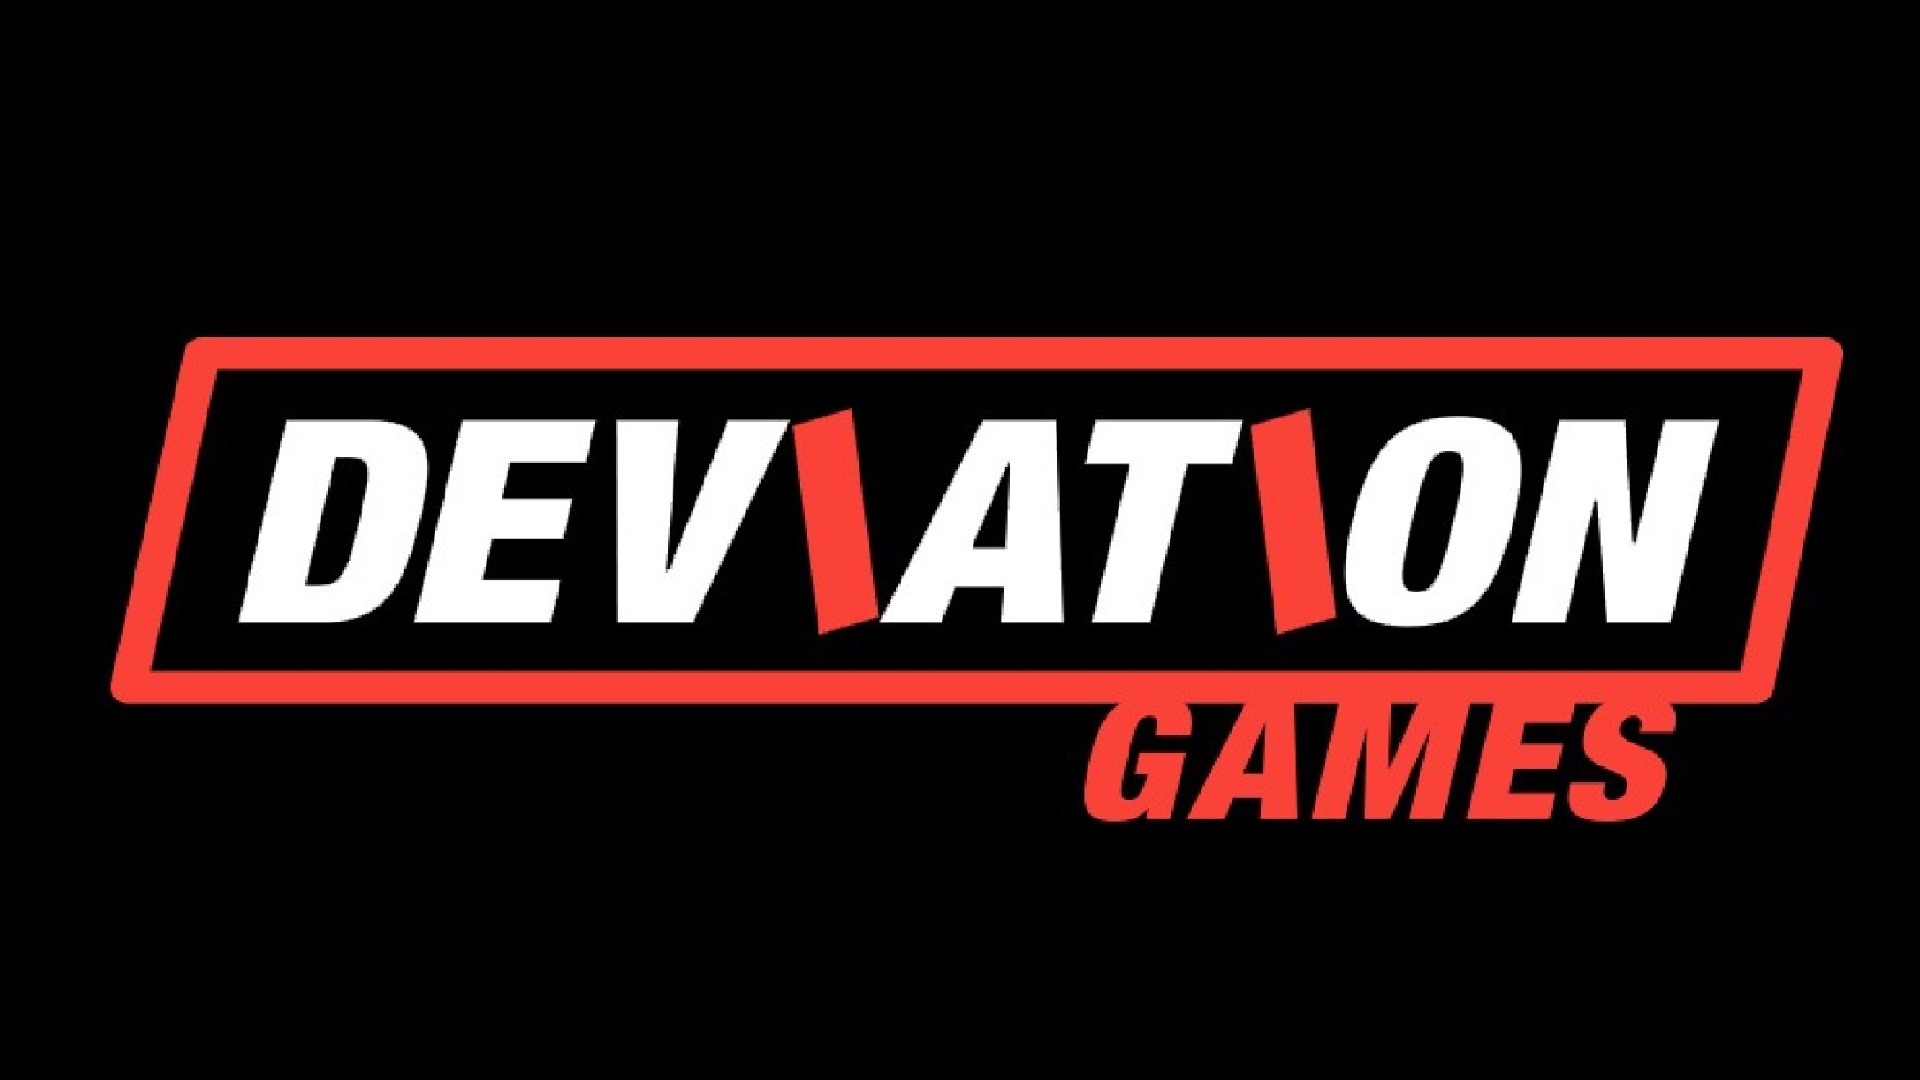 Lo studio Deviation Games ha chiuso i battenti